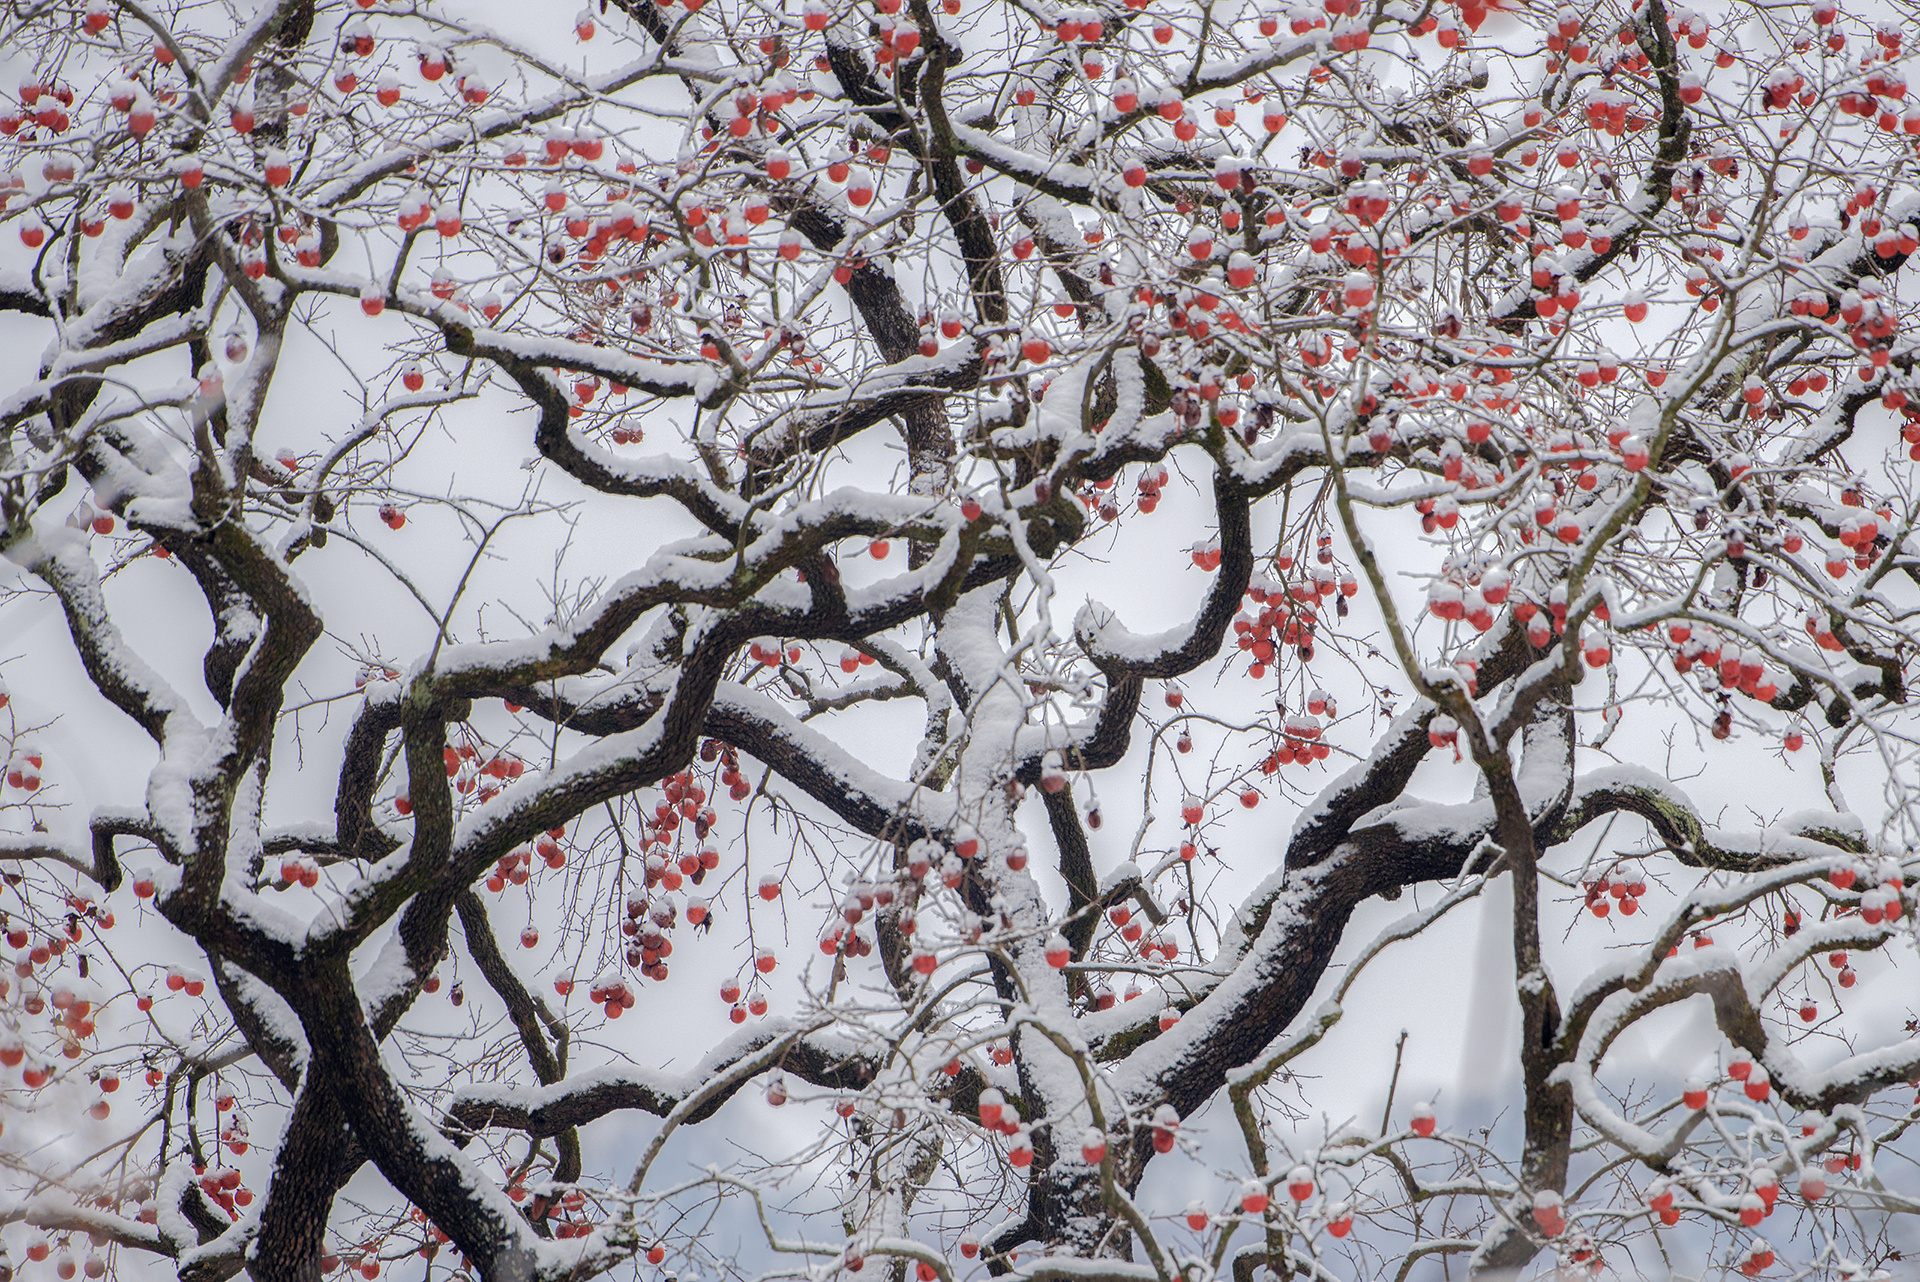 当苏阳村的百年老柿树结满累累硕果，又恰好遇上一场大雪，真称得上“红装素裹，分外妖娆。”
《红装素裹》何思德 2018年拍摄于三锅镇苏阳村